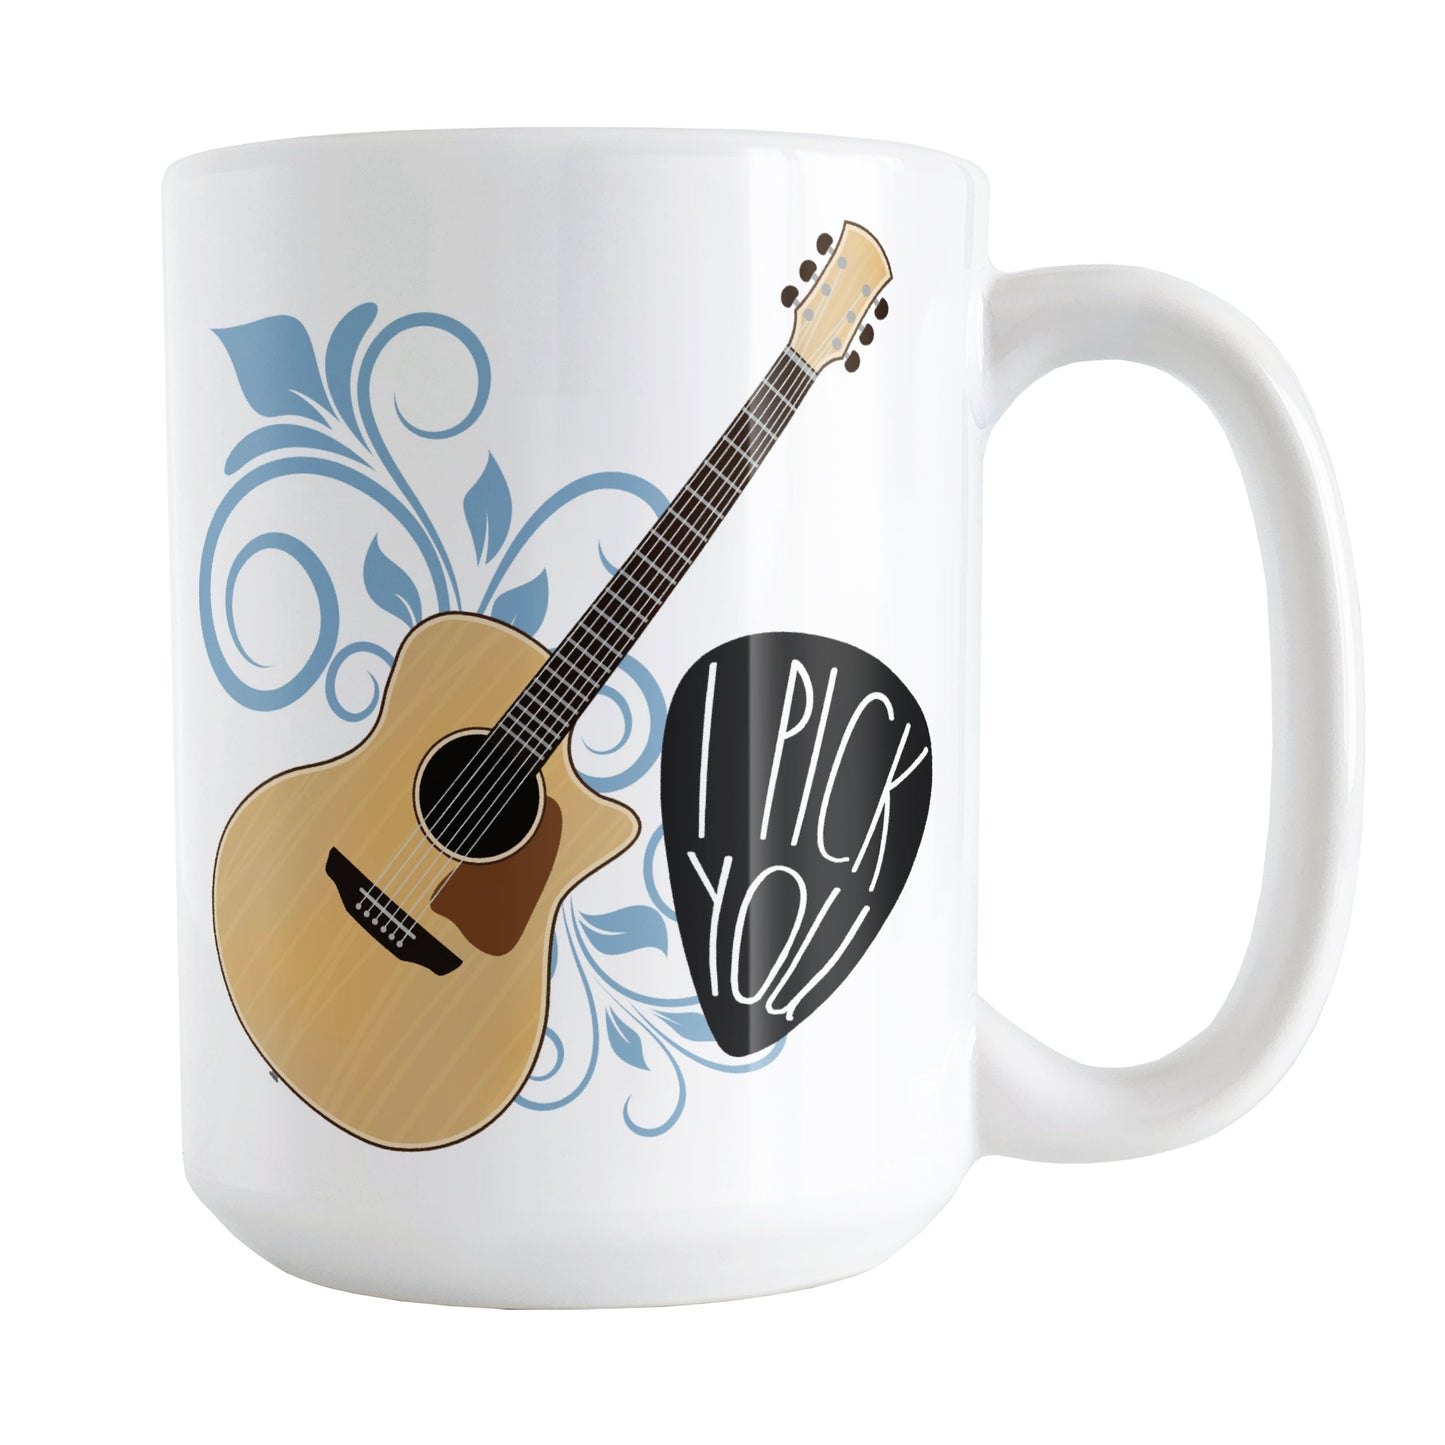 I Pick You - Guitar Mug (15oz) at Amy's Coffee Mugs